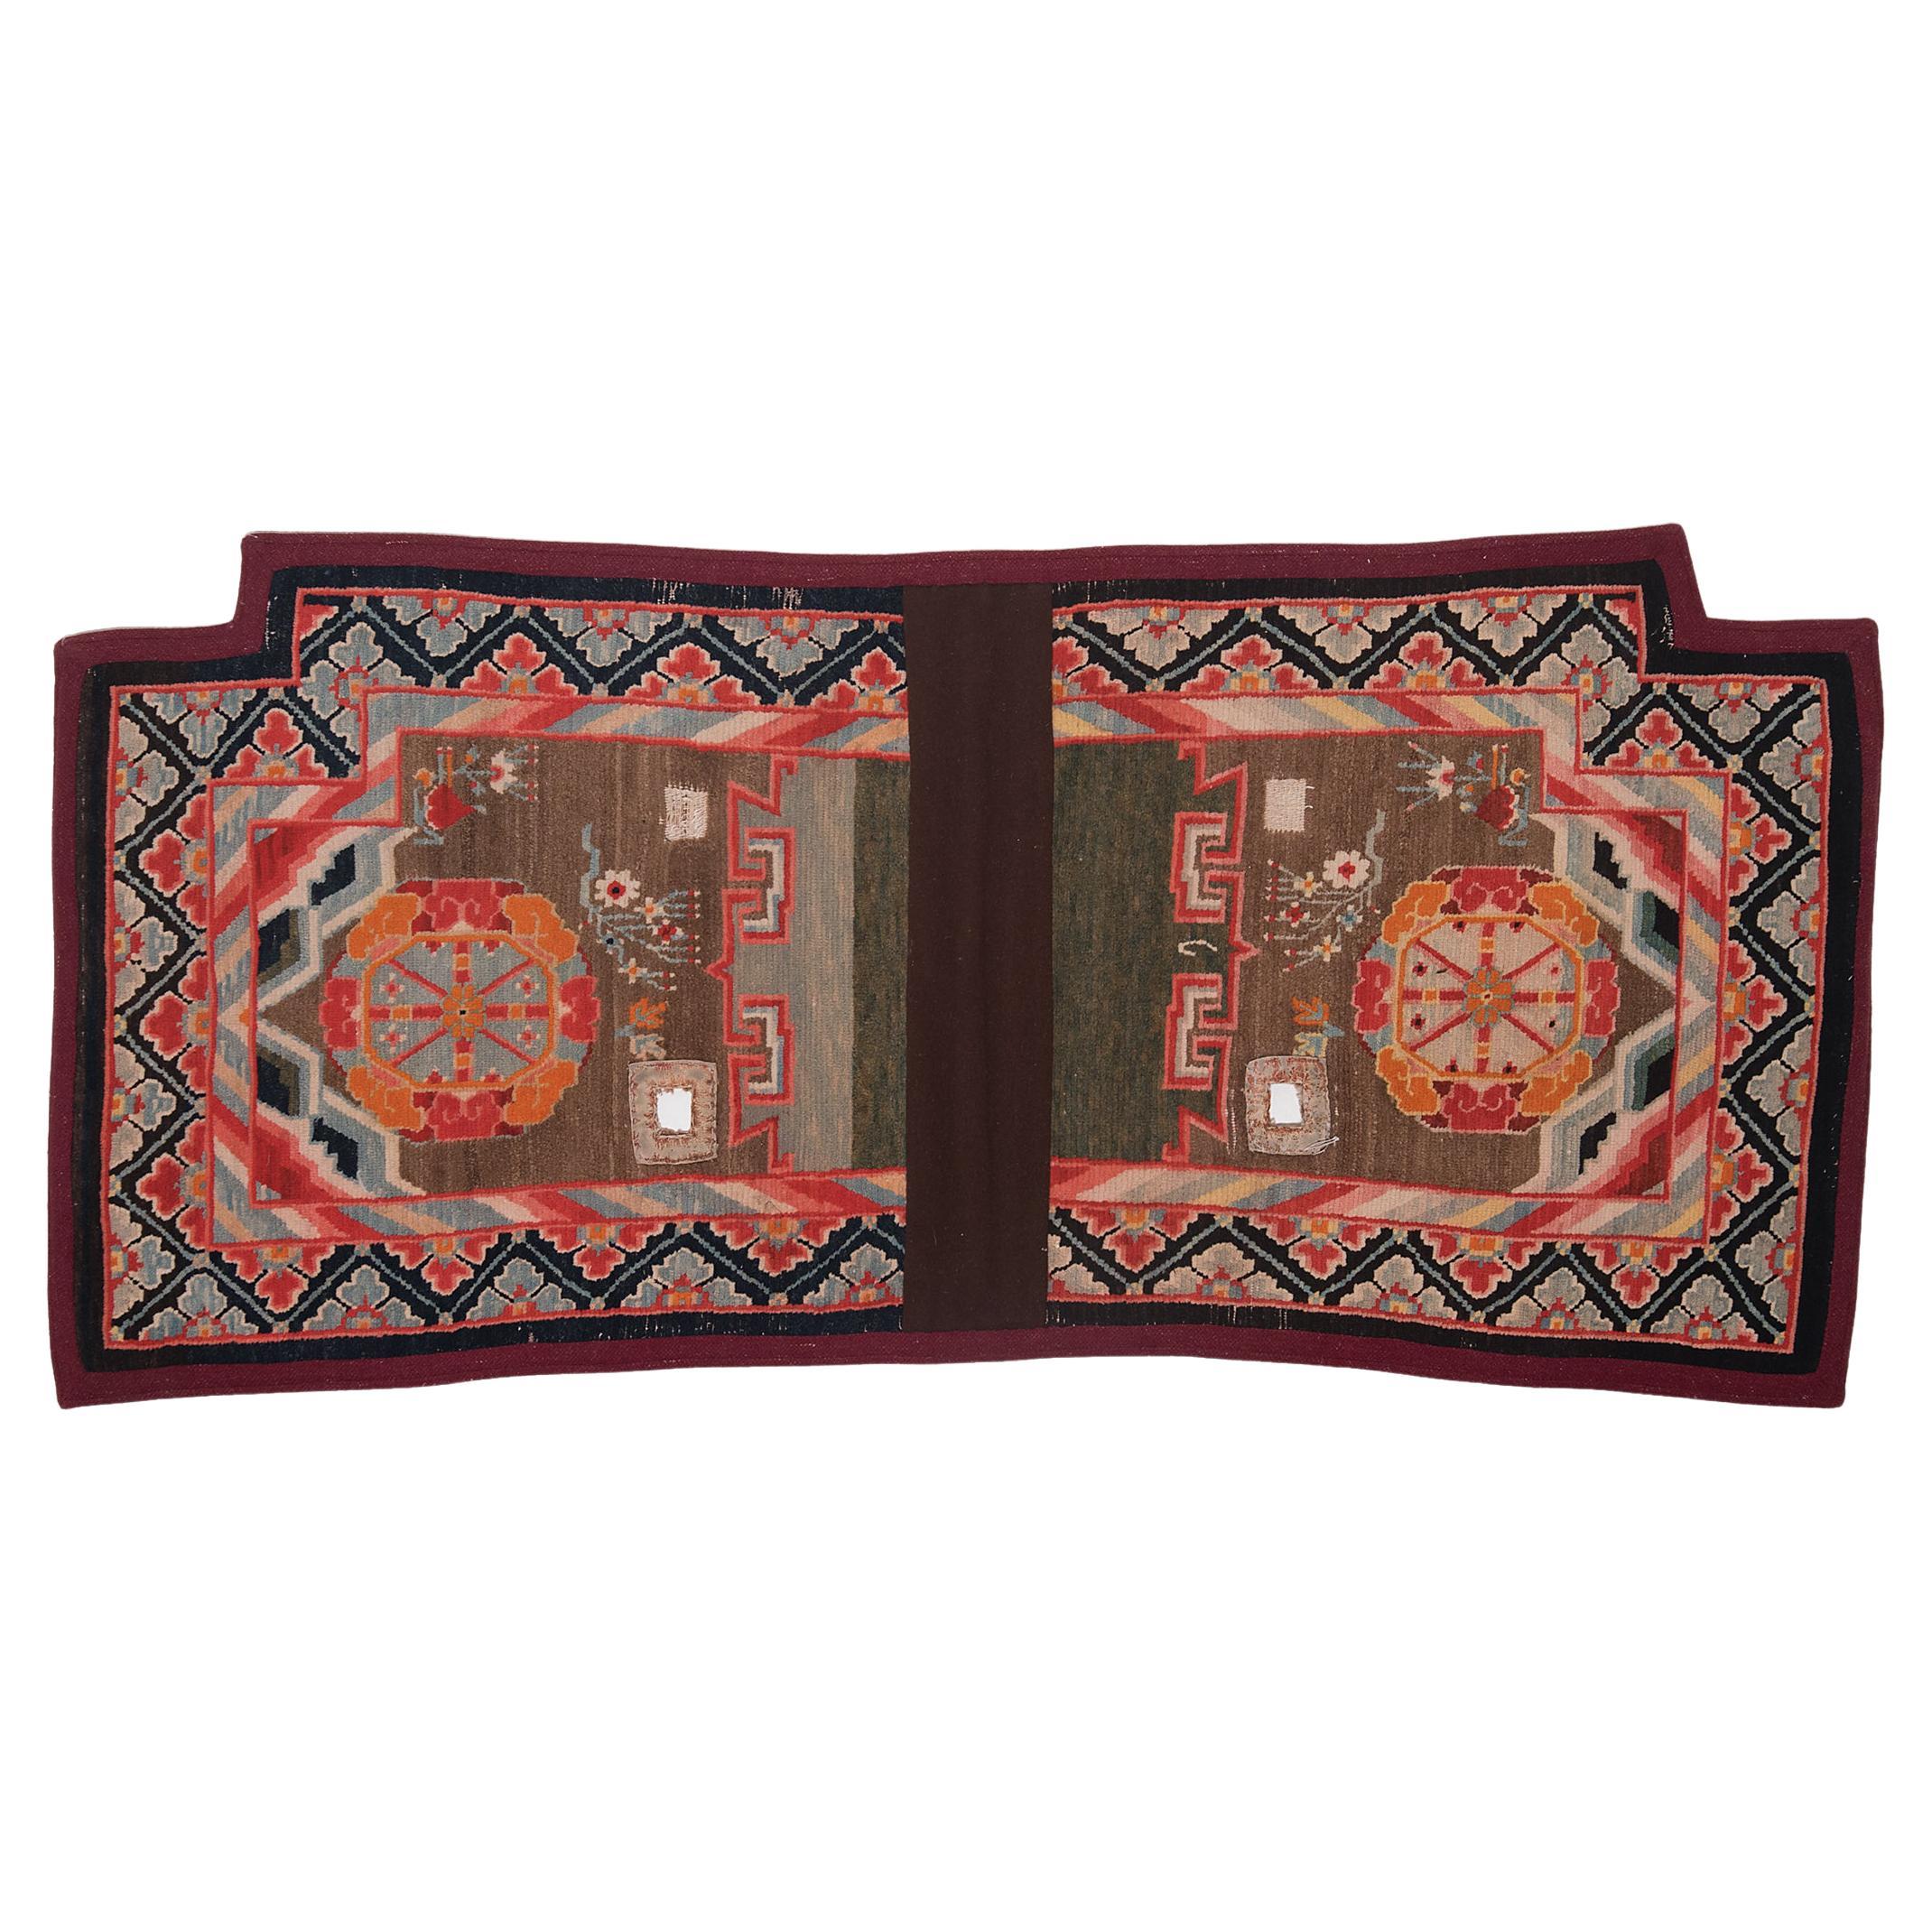 Tapis tibétain de selle avec médaillons en forme de roue de vie, vers 1900